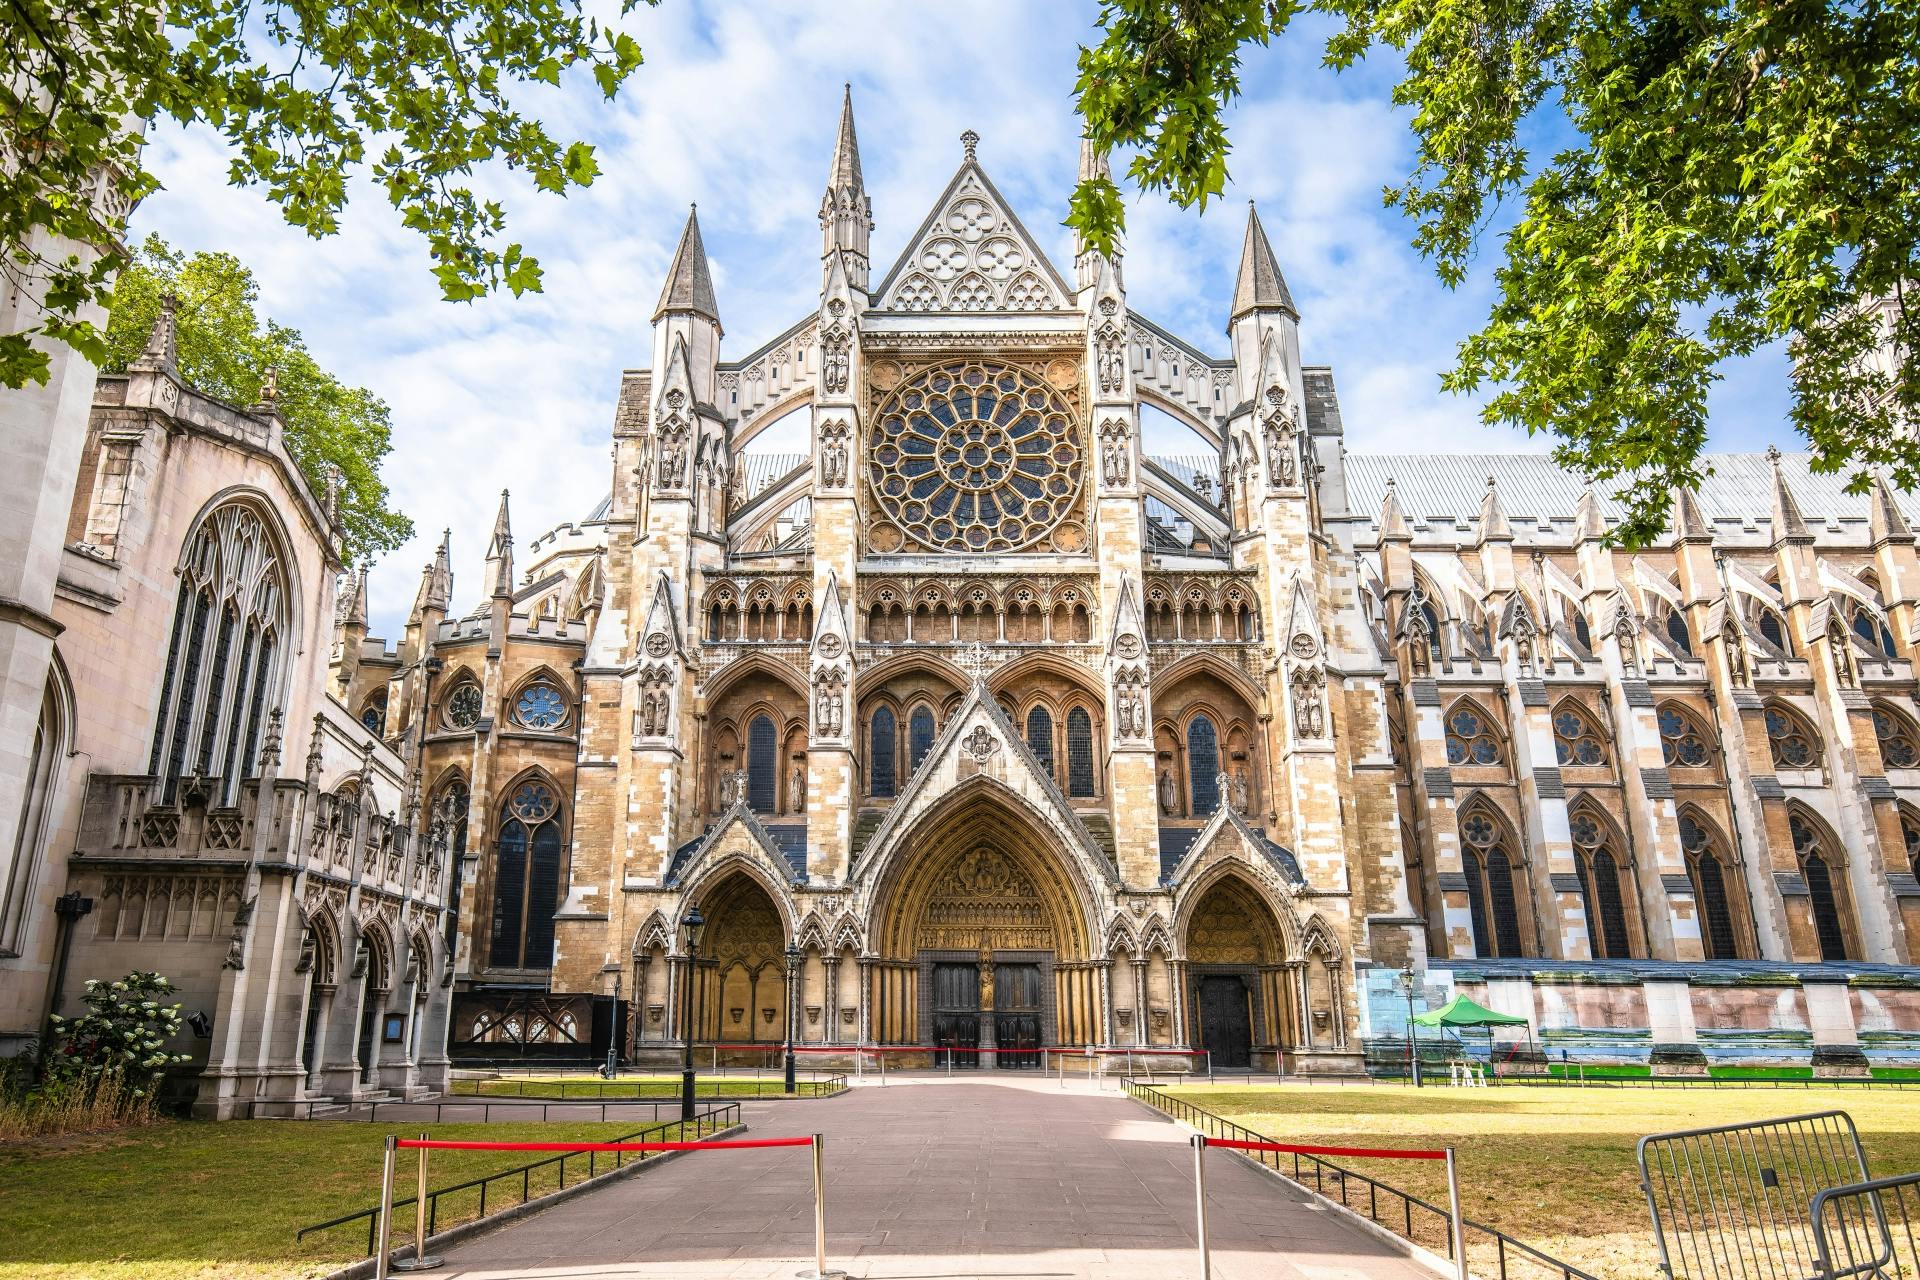 Visita guiada a la Abadía de Westminster, el Big Ben y Buckingham